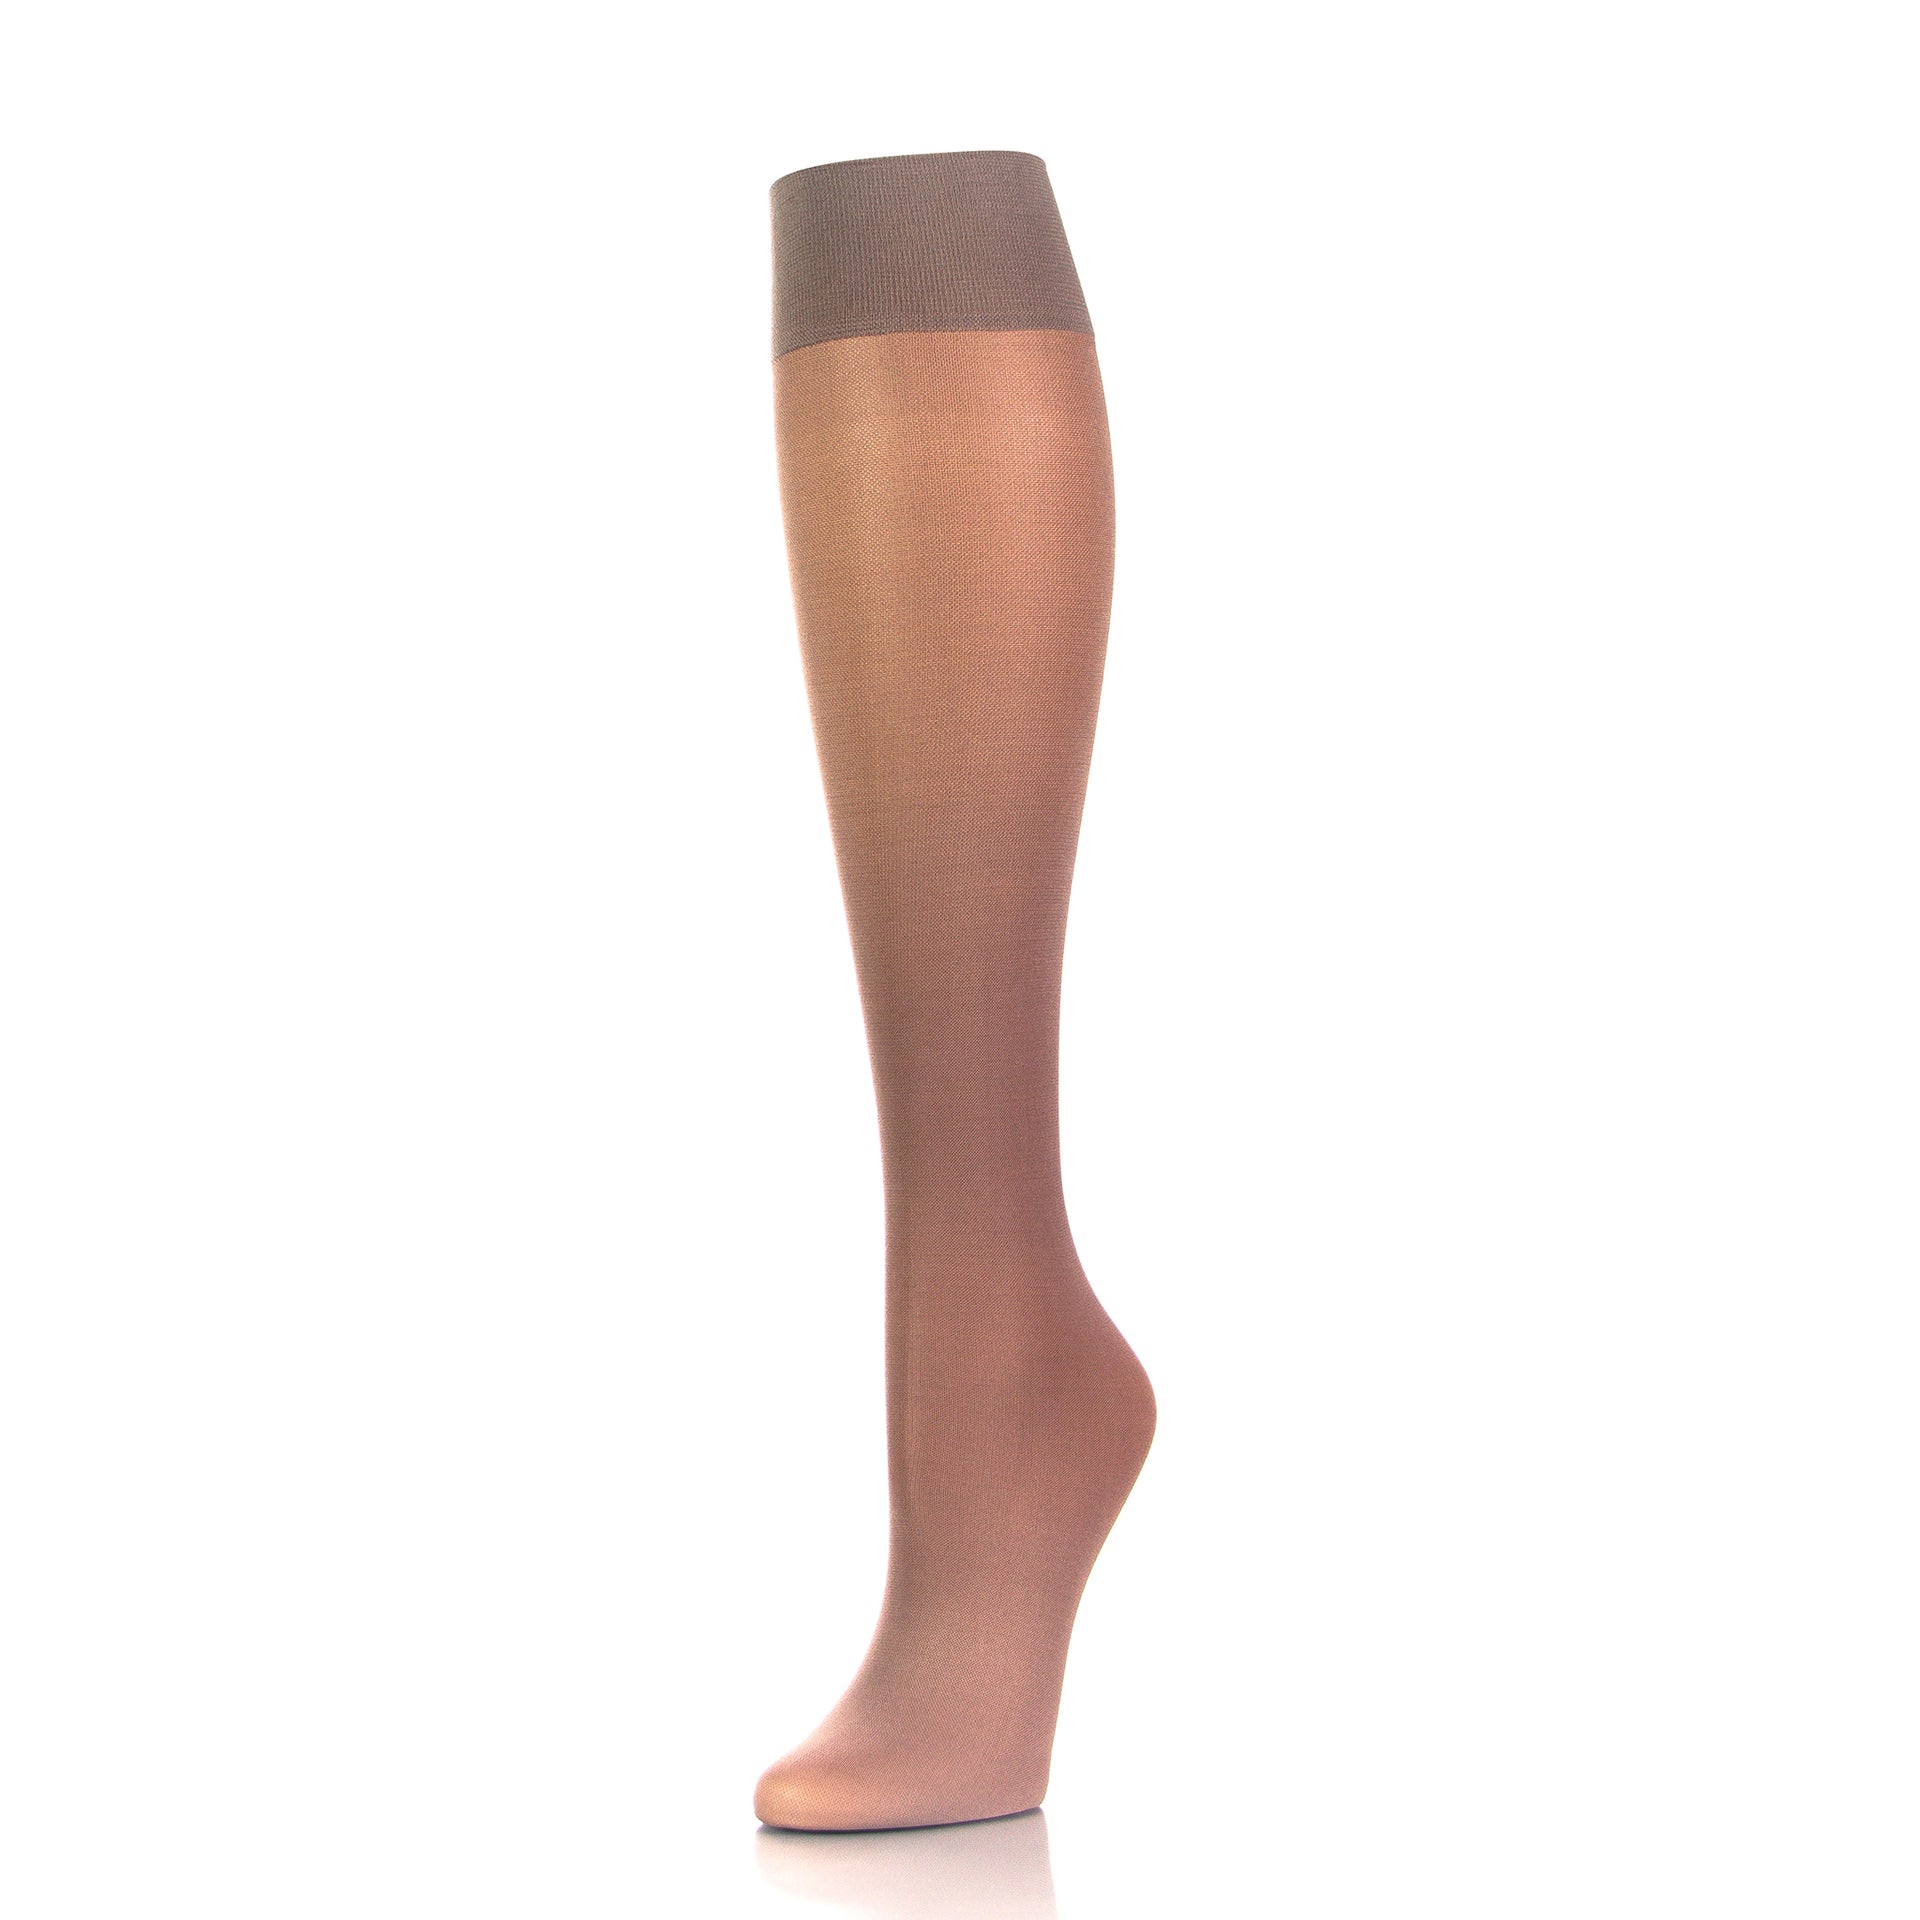 Bas de compression beige 20-30 mmHg pour femmes Doctor Brace, soutien optimal, vue complète jambe intérieure - Softmedi